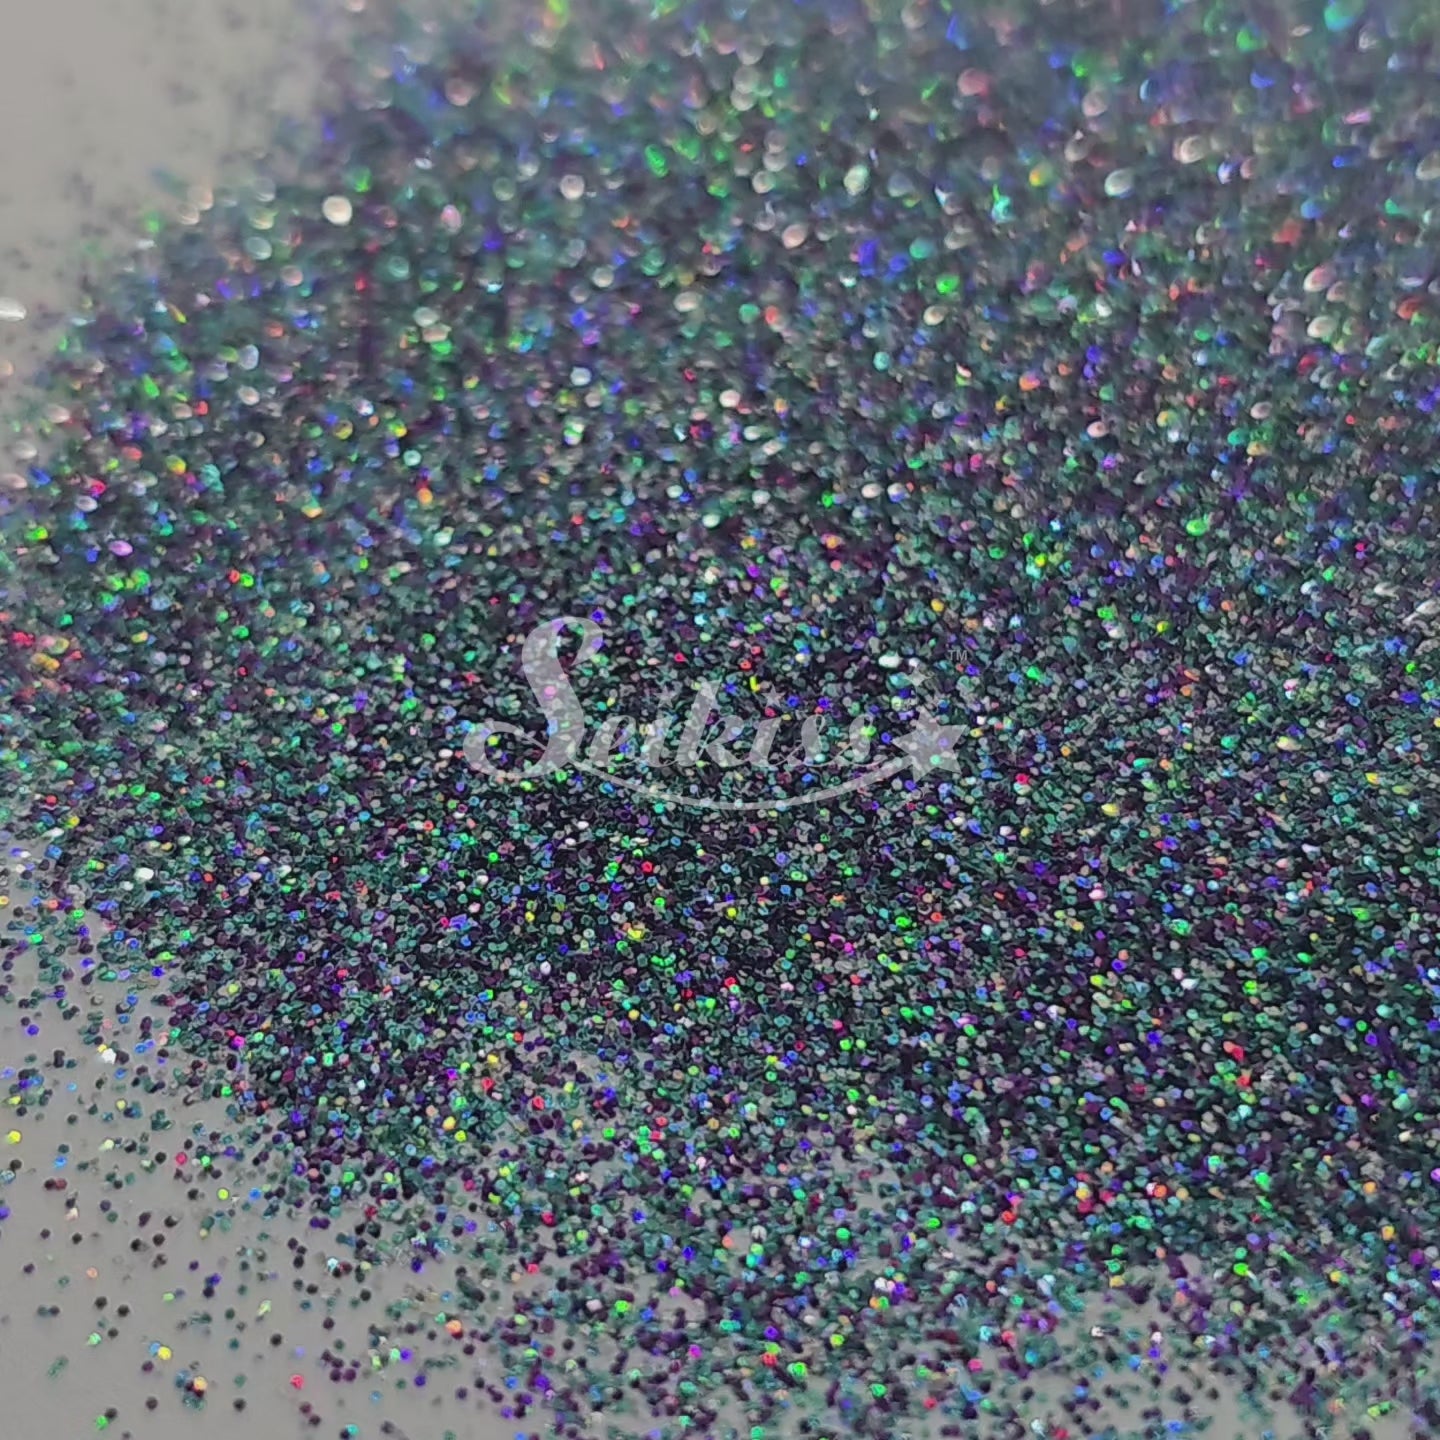 Cosmos Galaxy Holographic Fine Glitter - Silver Glitter